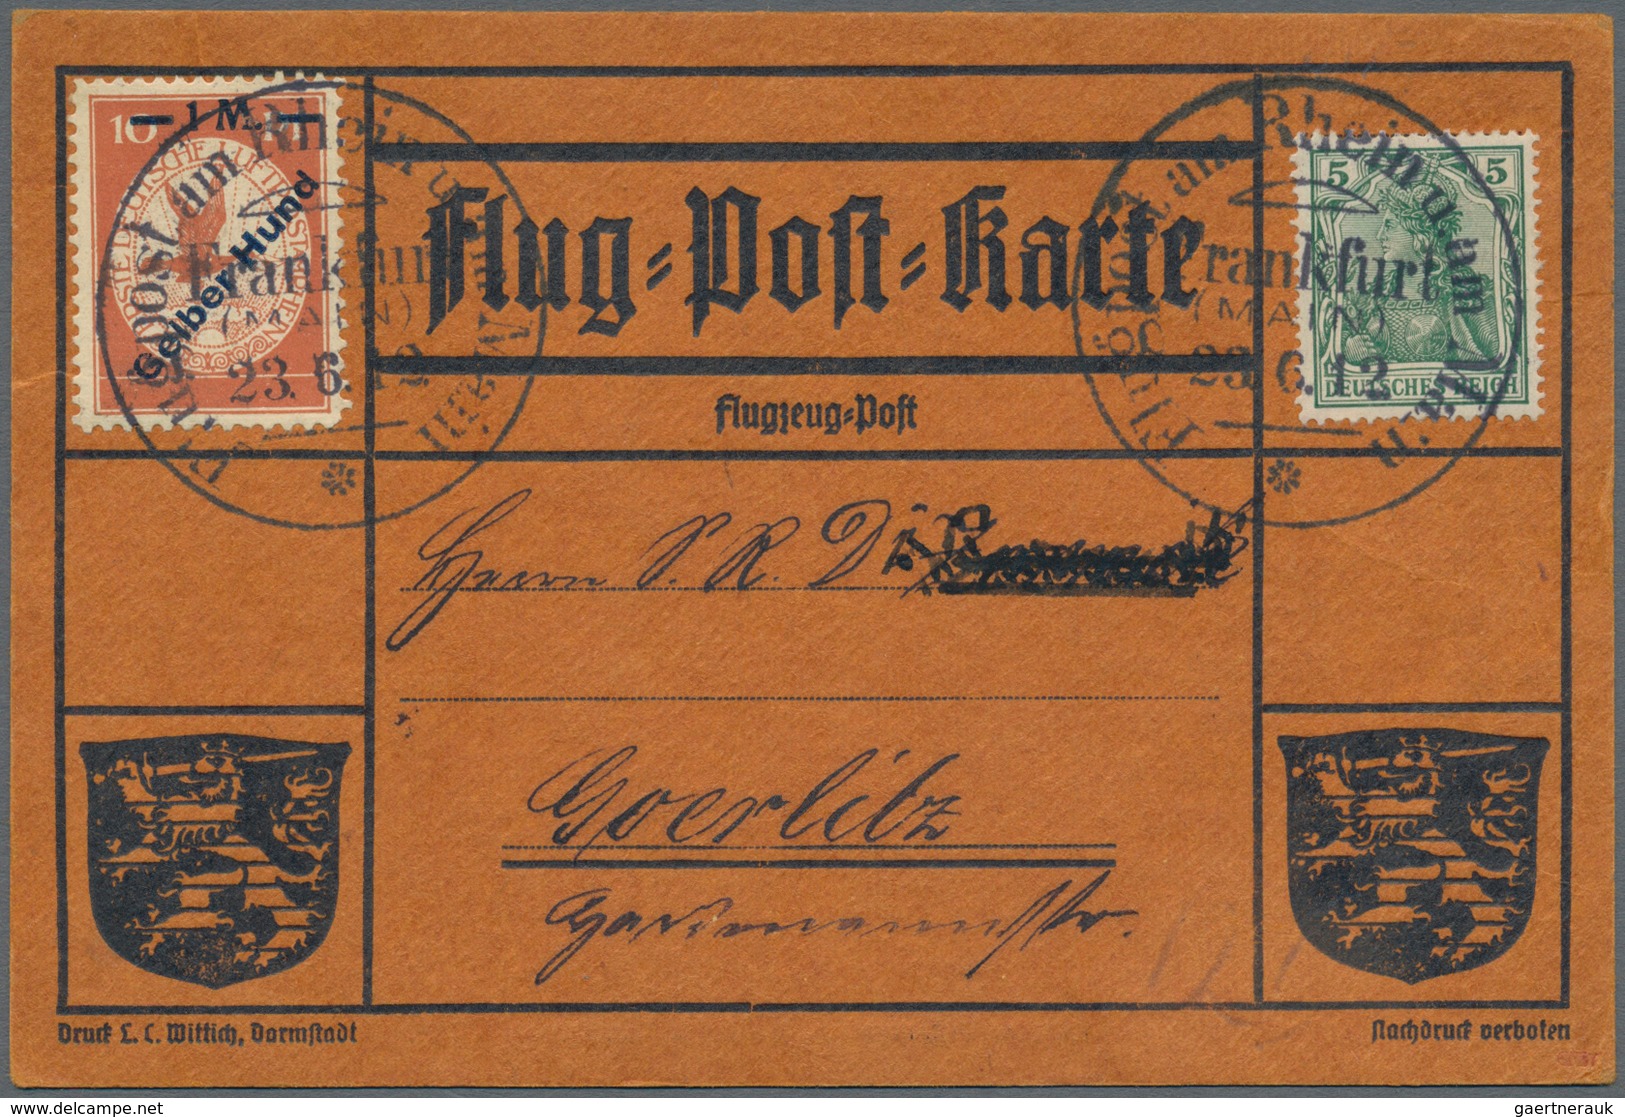 Flugpost Deutschland: 1912. Scarce Pioneer Gelber Hund Flugpost / Yellow Dog Airmail From Frankfurt, - Luft- Und Zeppelinpost